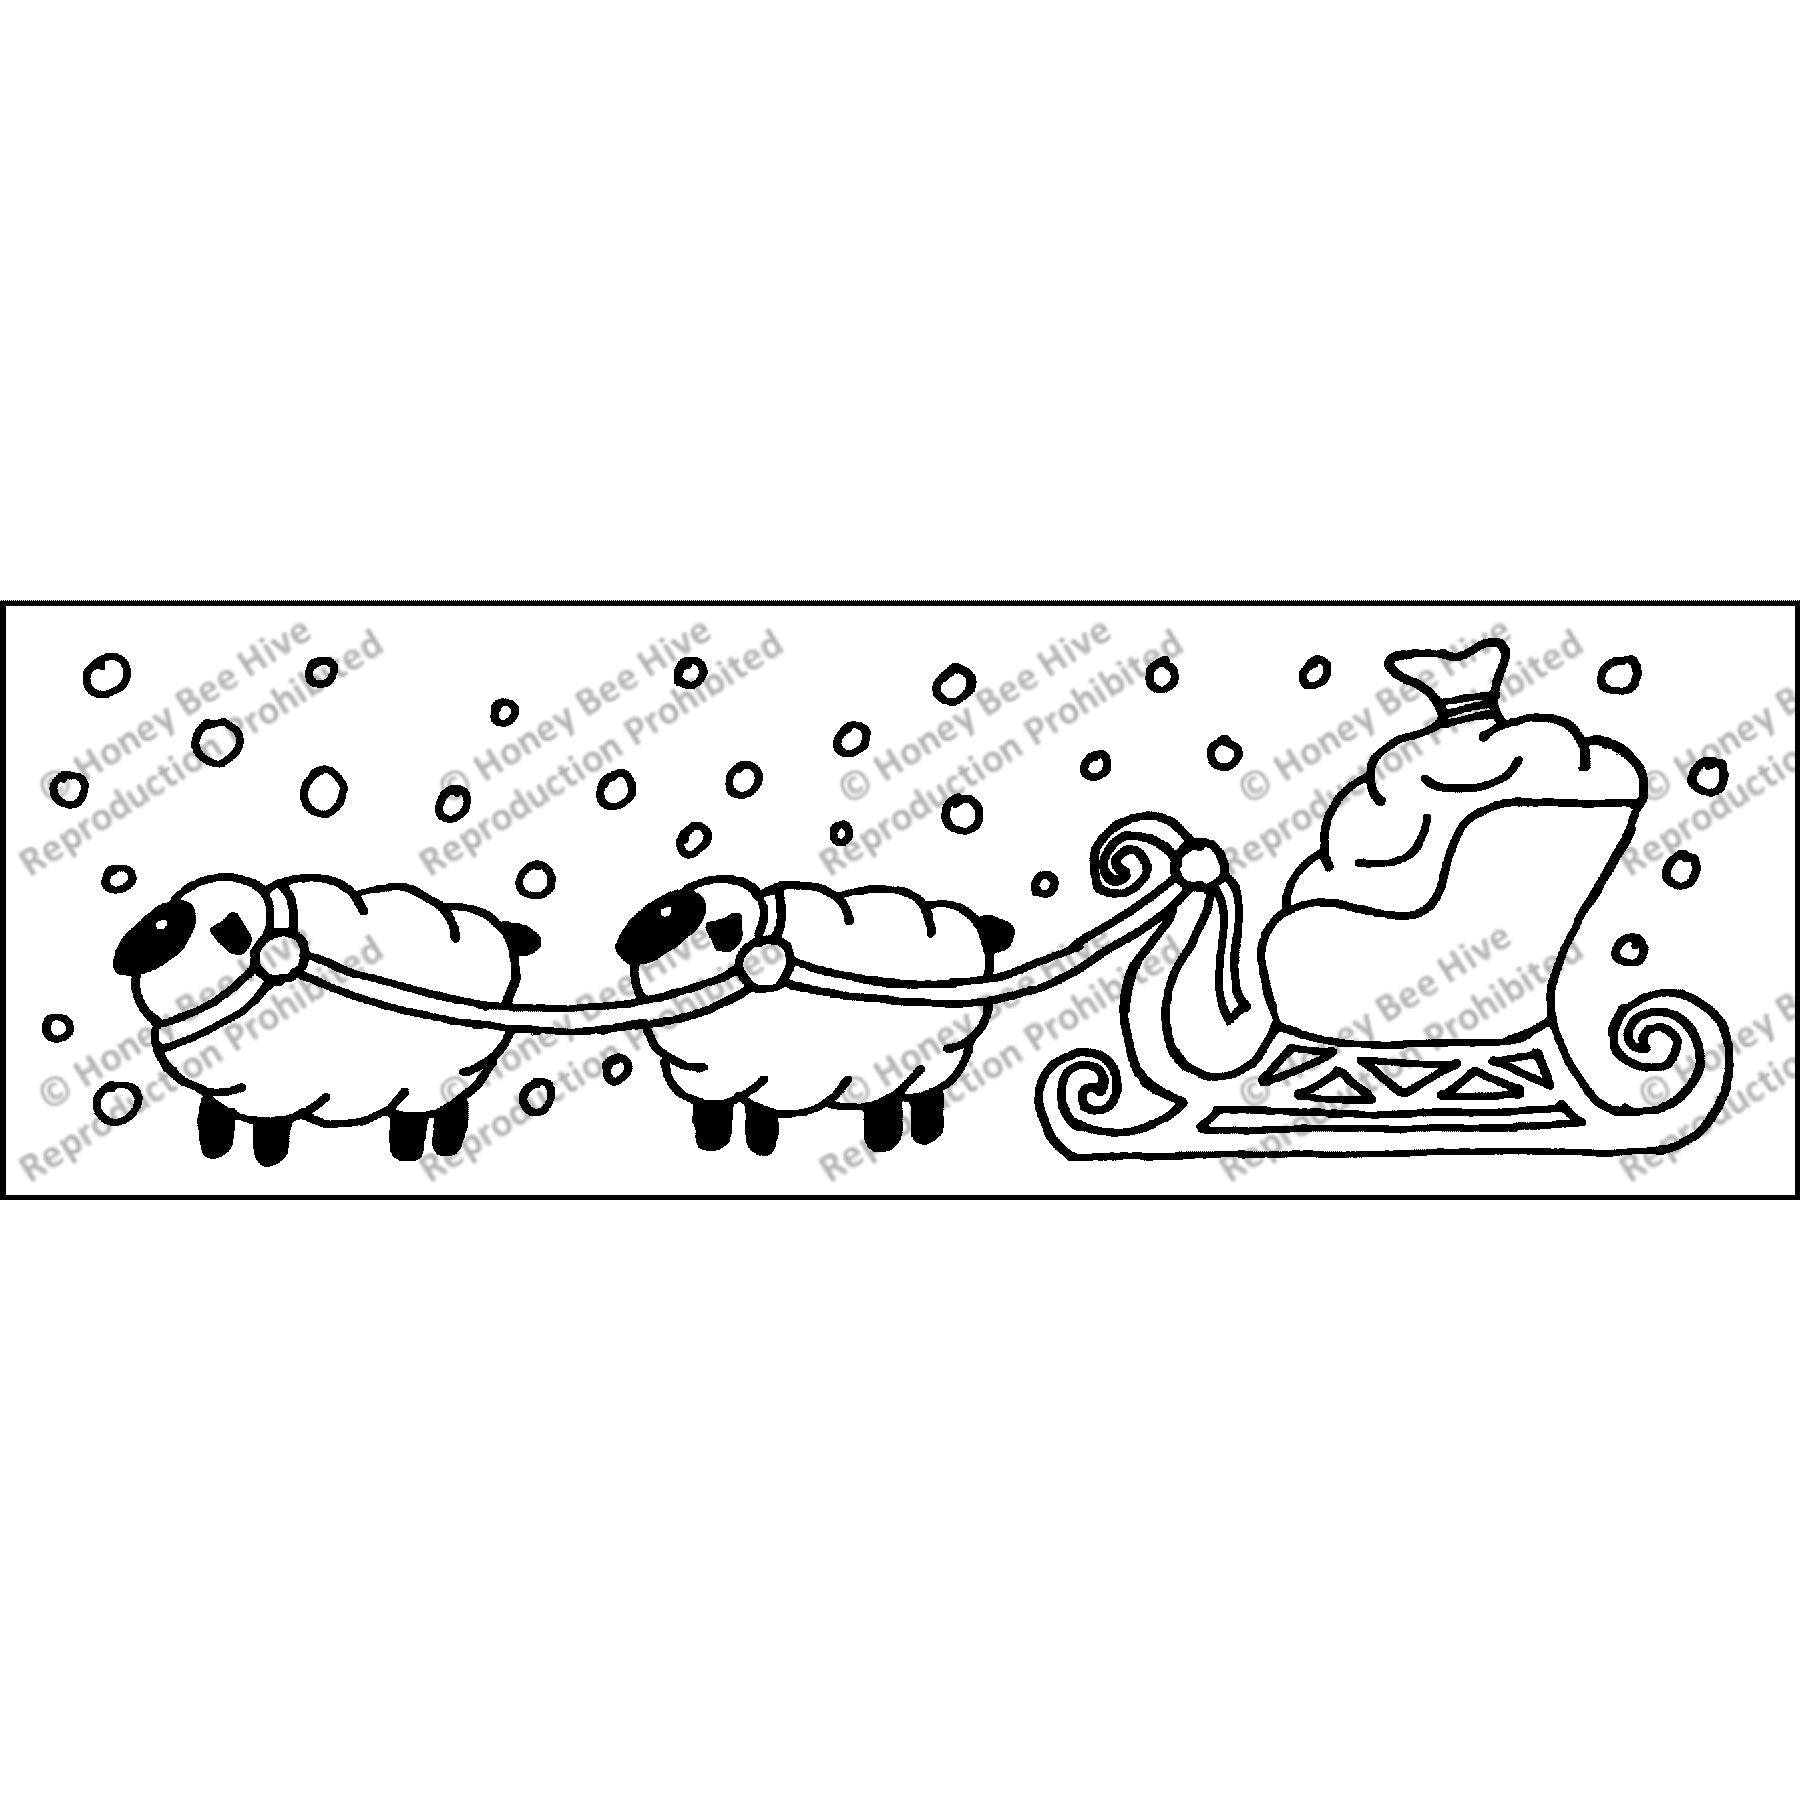 Merry Christmas to Ewe, rug hooking pattern